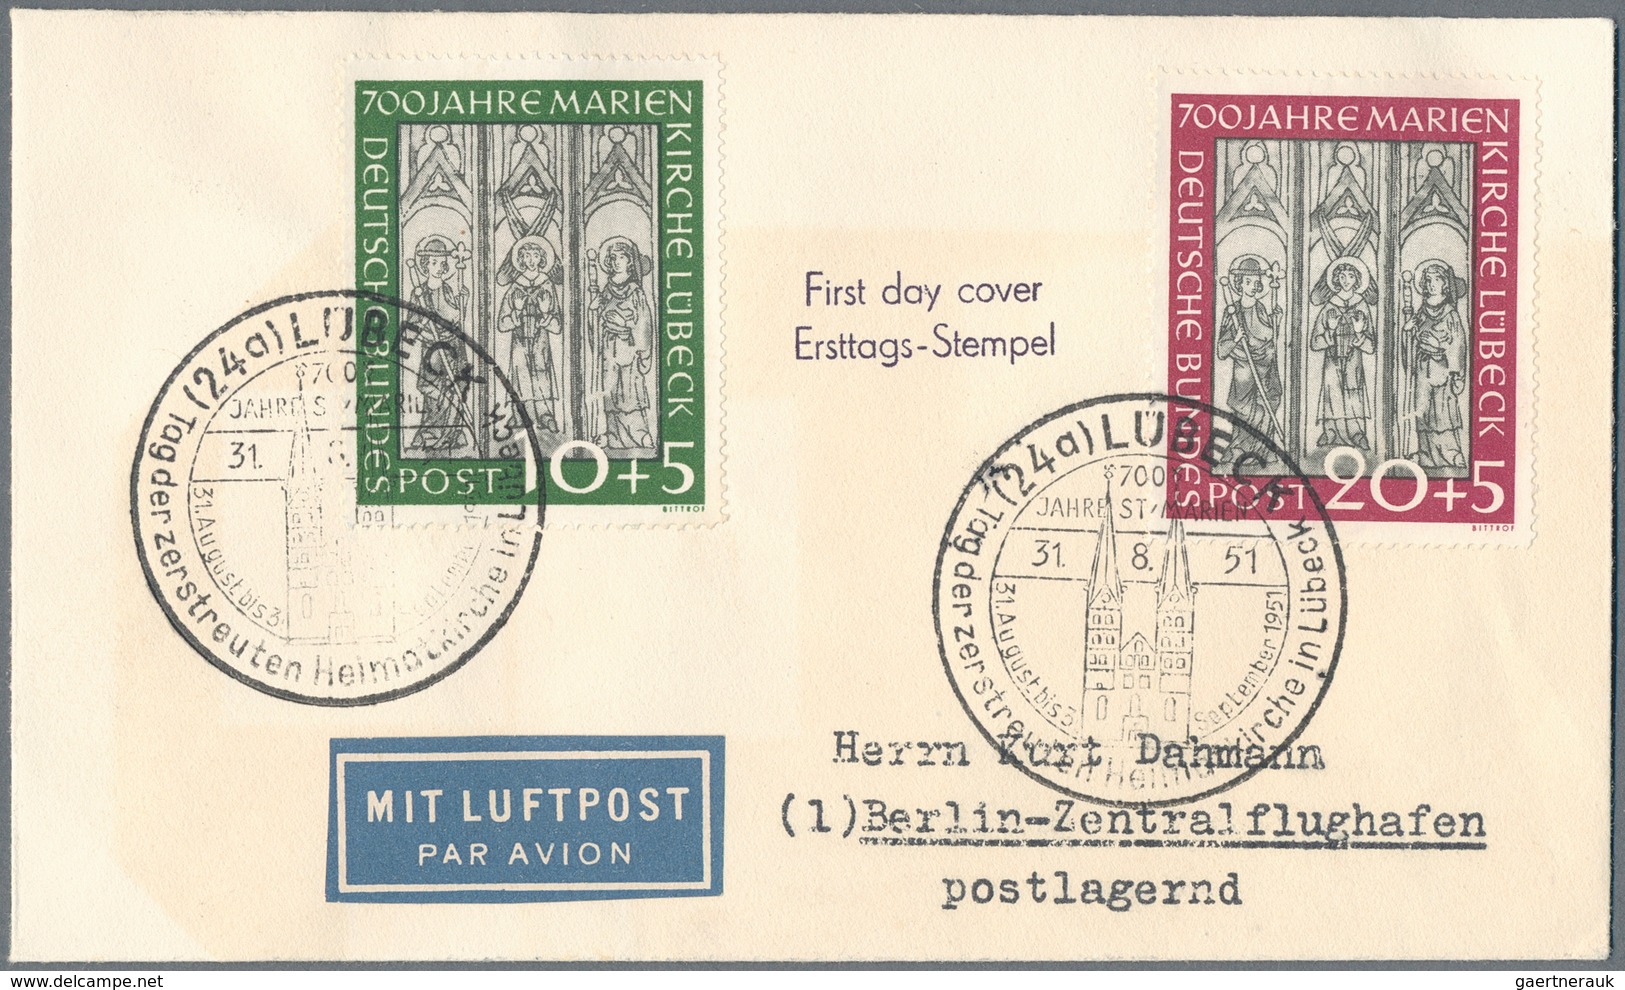 Bundesrepublik Deutschland: 1950/1960 (ca.), netter kleiner Posten von knapp 100 Belegen mit u.a. gu